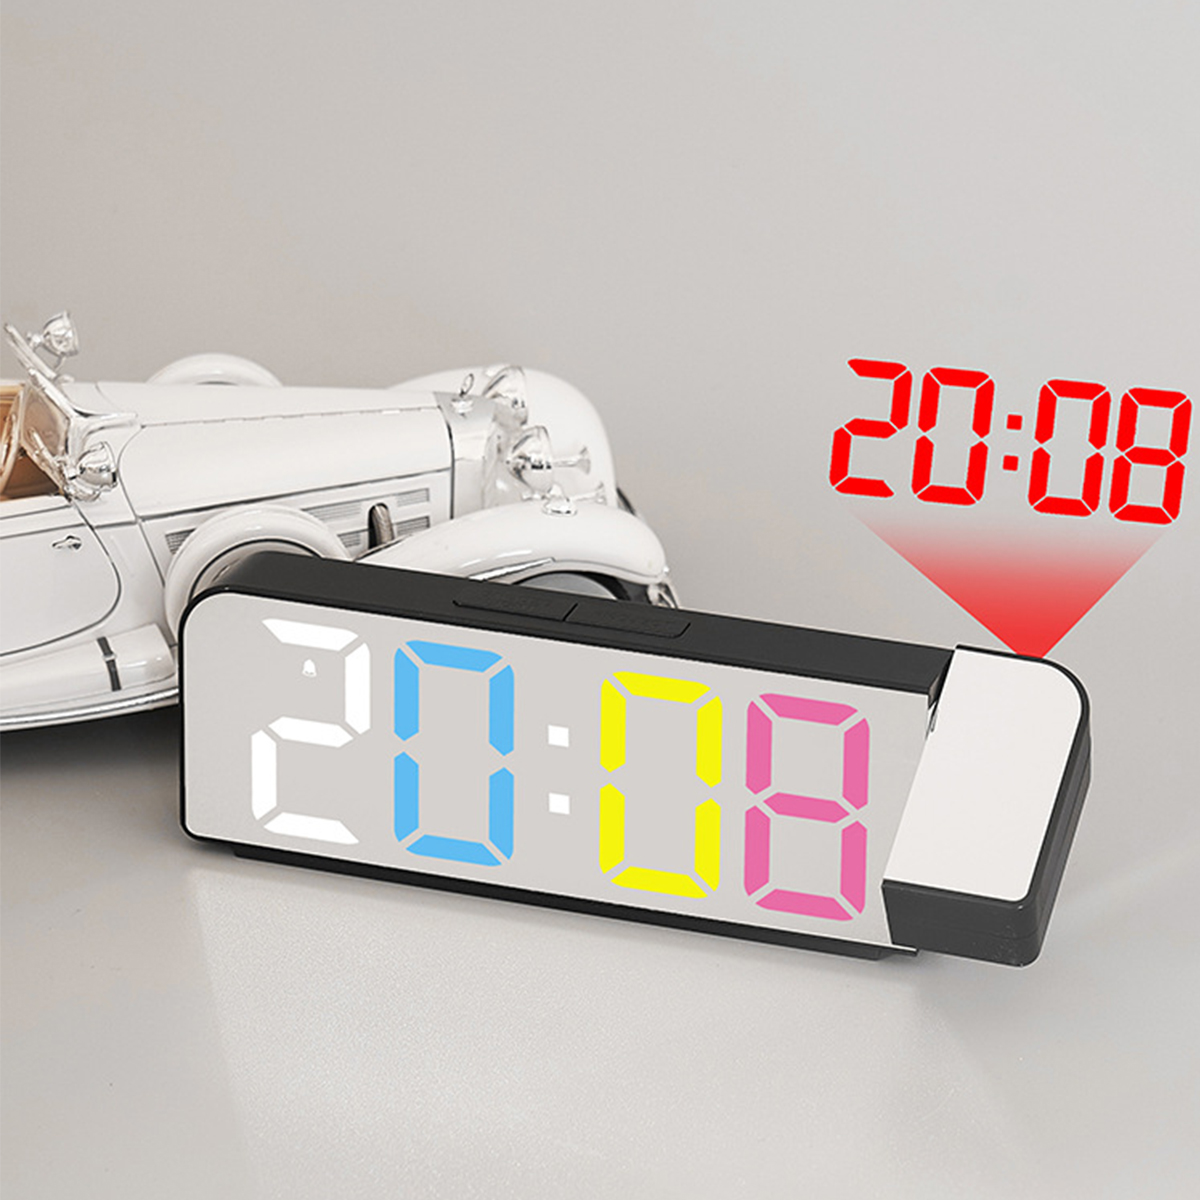 Projektionswecker Uhr LED-Anzeige und BRIGHTAKE mit Temperaturanzeige